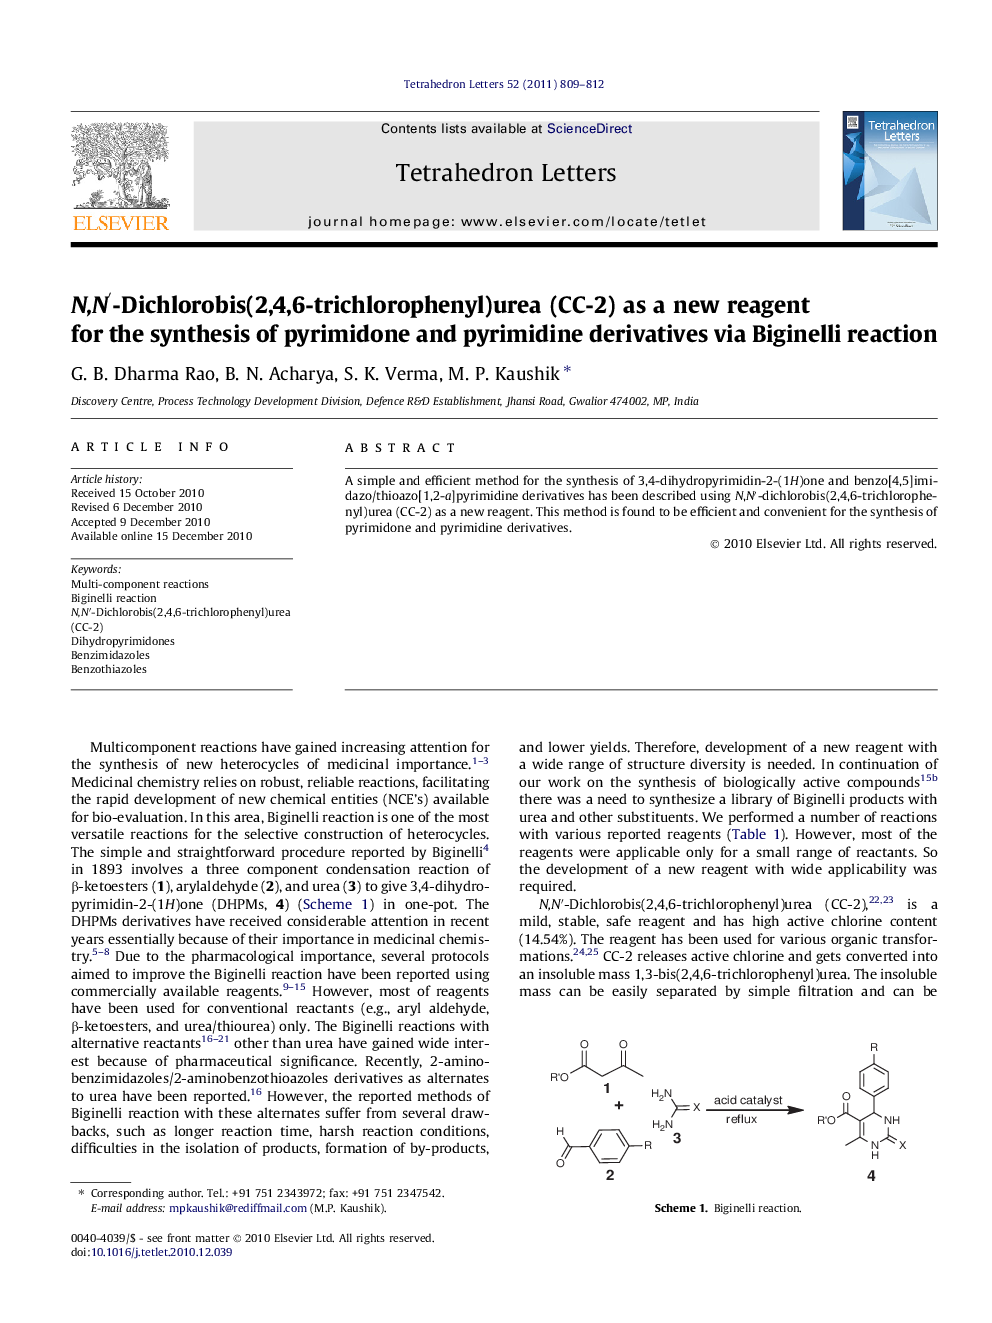 N,Nâ²-Dichlorobis(2,4,6-trichlorophenyl)urea (CC-2) as a new reagent for the synthesis of pyrimidone and pyrimidine derivatives via Biginelli reaction